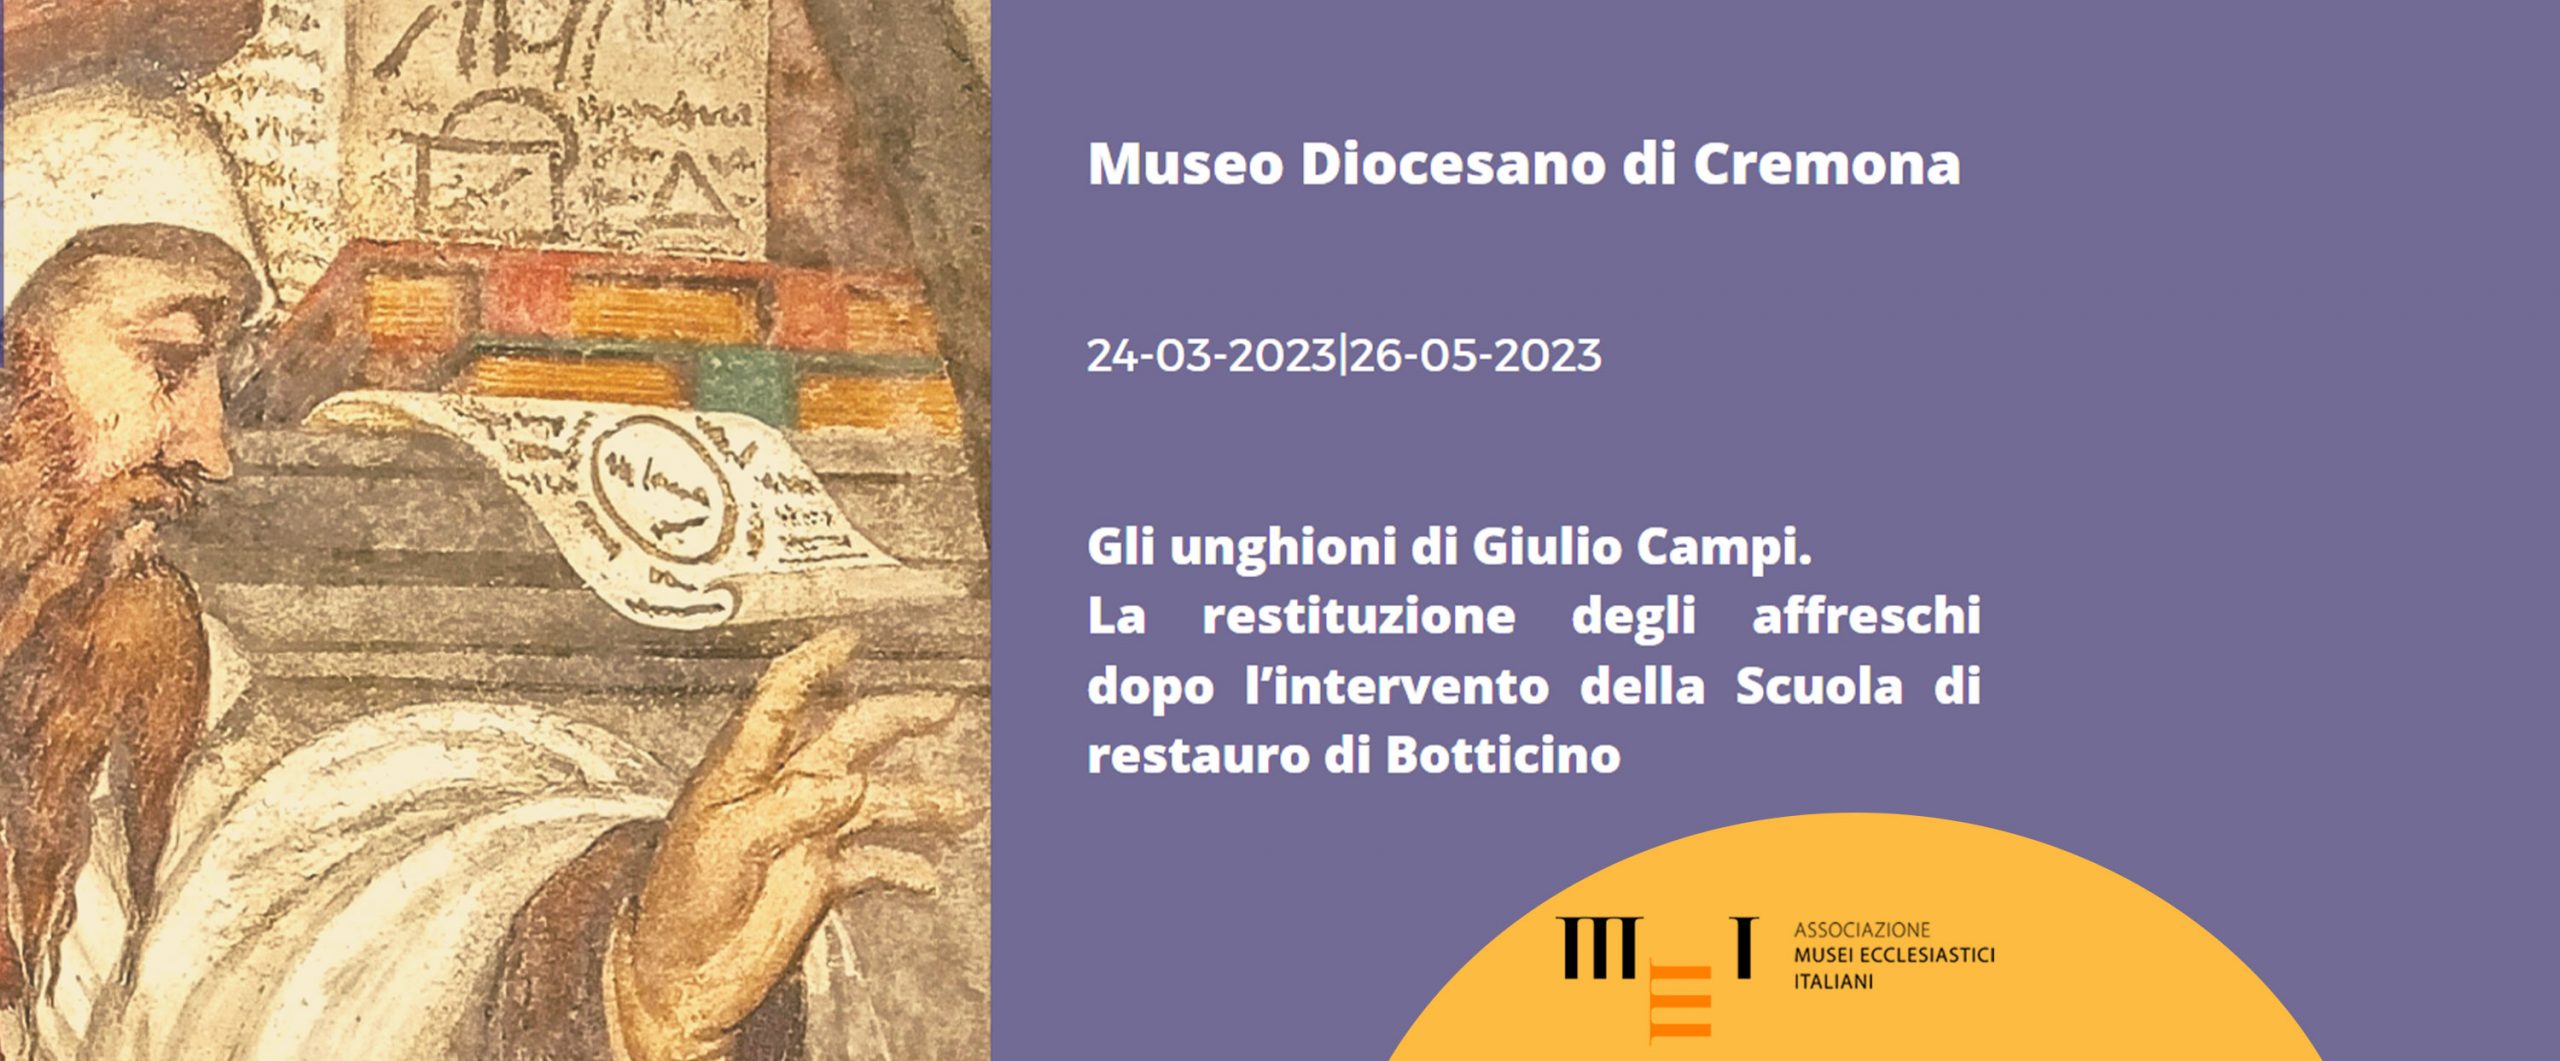 Giulio Campi e la restituzione degli unghioni Strappati nella Chiesa di S. Maria delle Grazie a Soncino 24 marzo 26 maggio